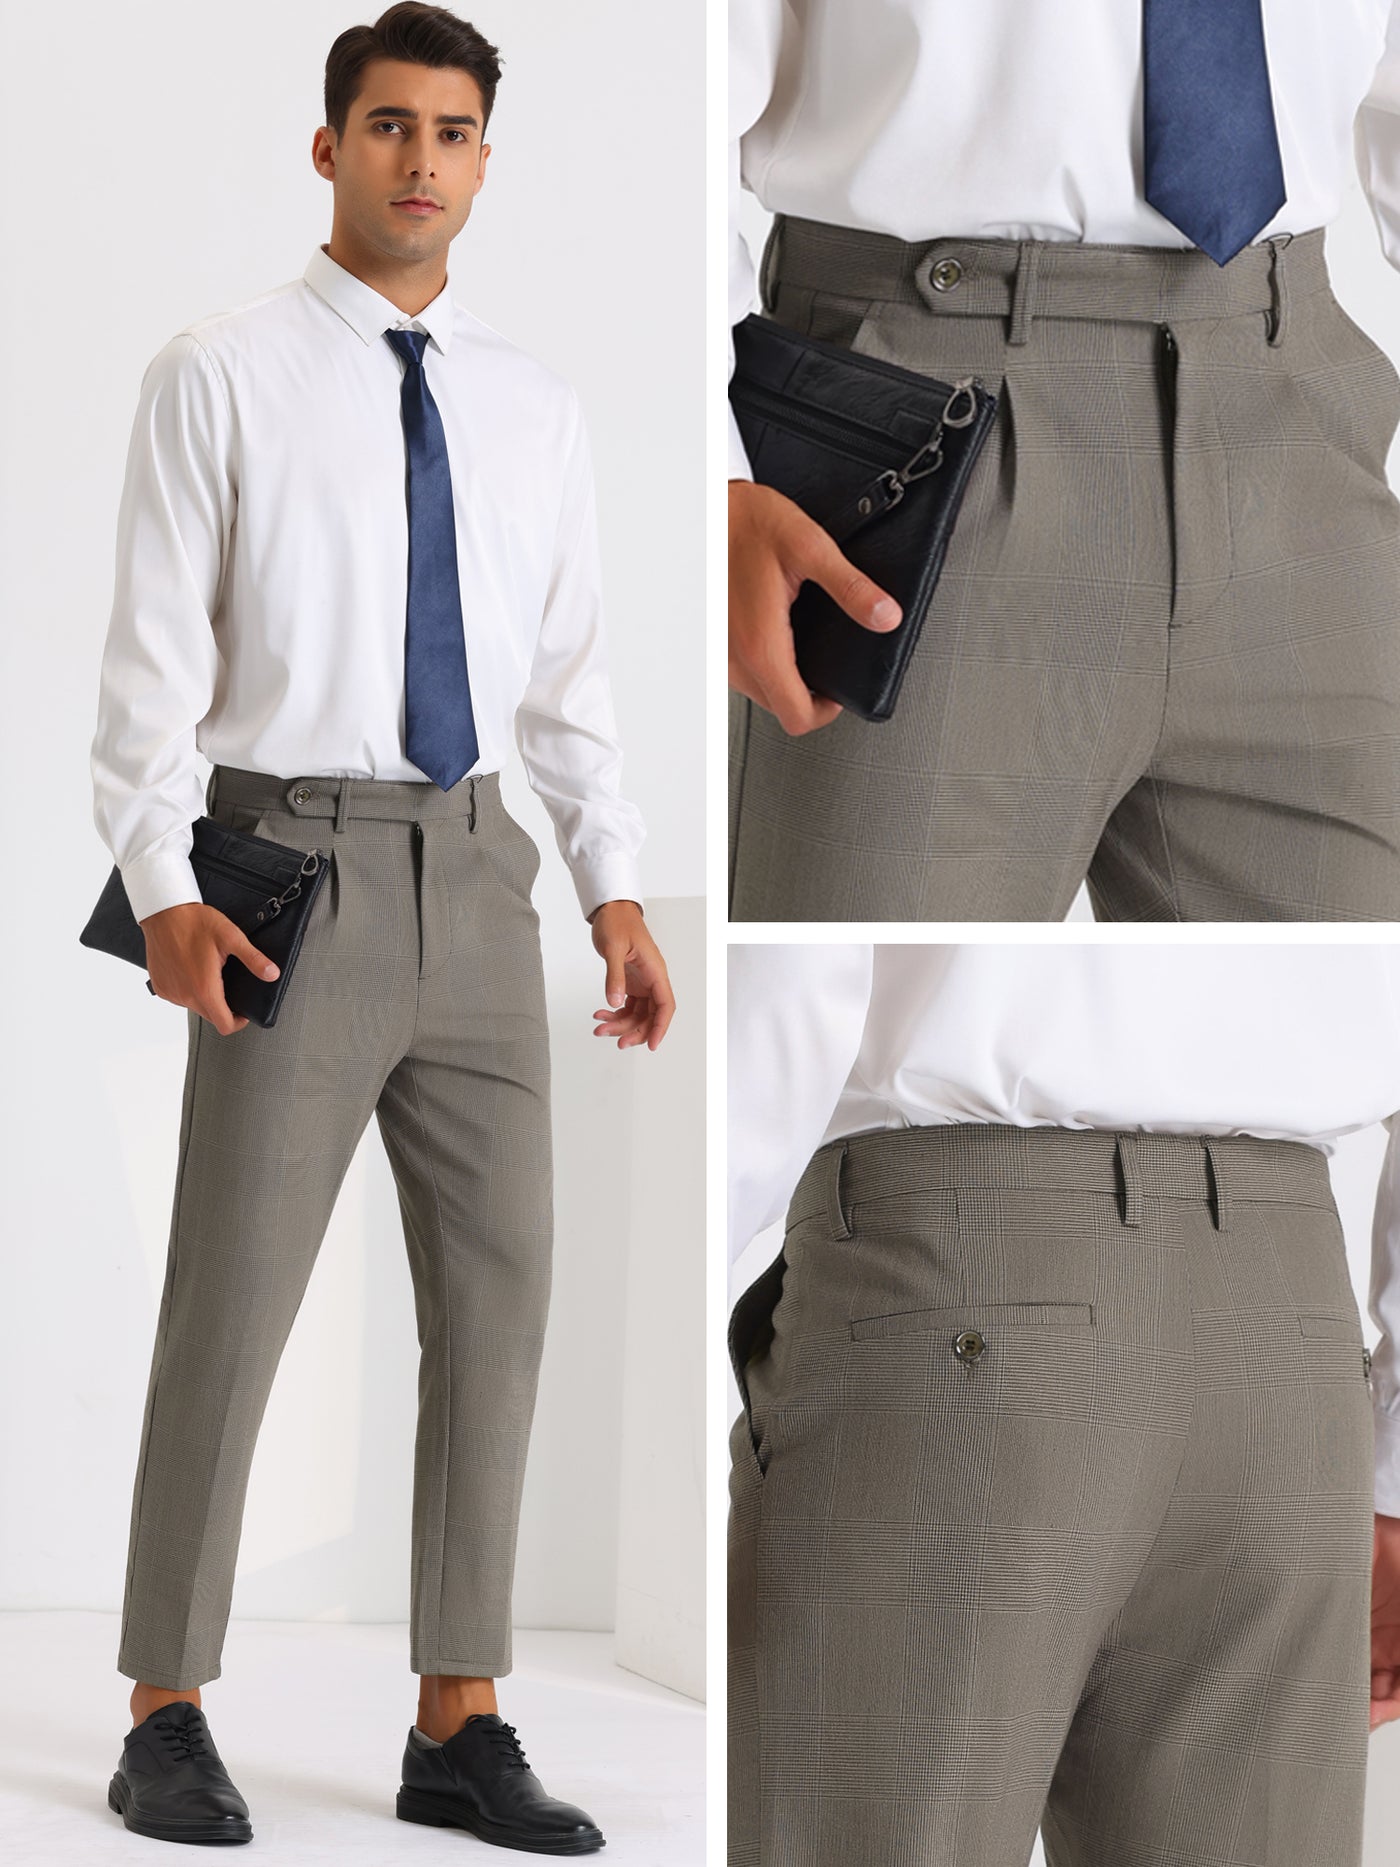 Bublédon Men's Expandable Waist Pleated Formal Plaid Pants